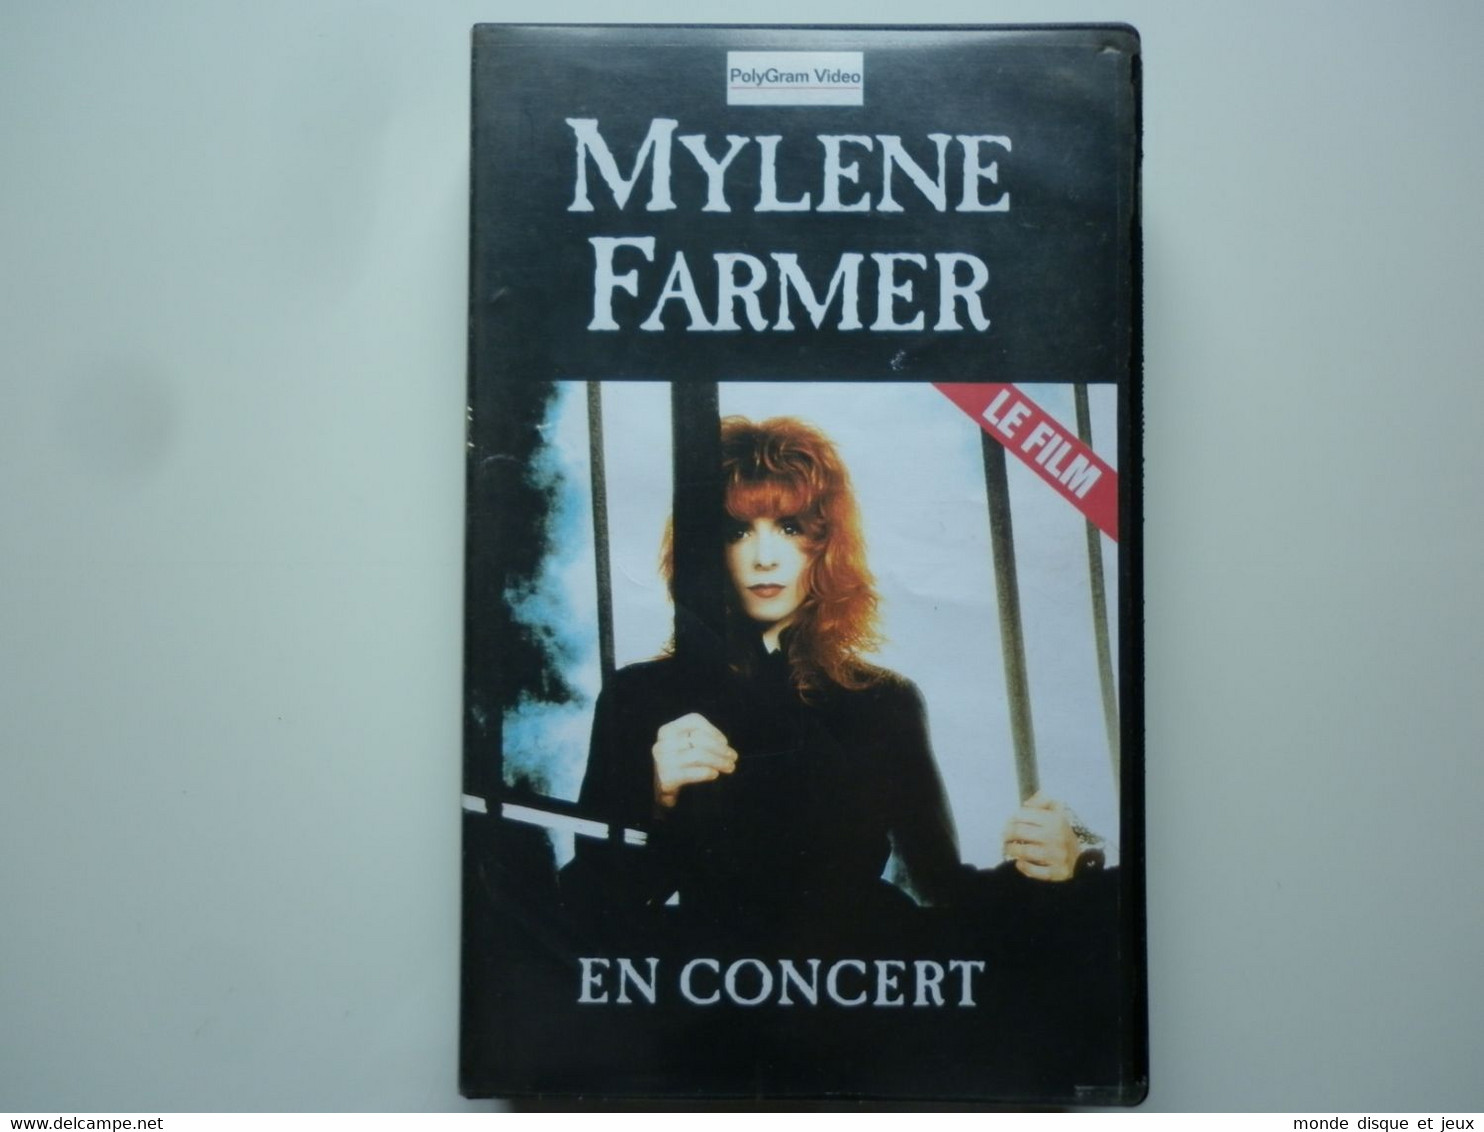 Mylene Farmer Vhs En Concert Le Film éditeur PolyGram Video BASF - Concert Et Musique